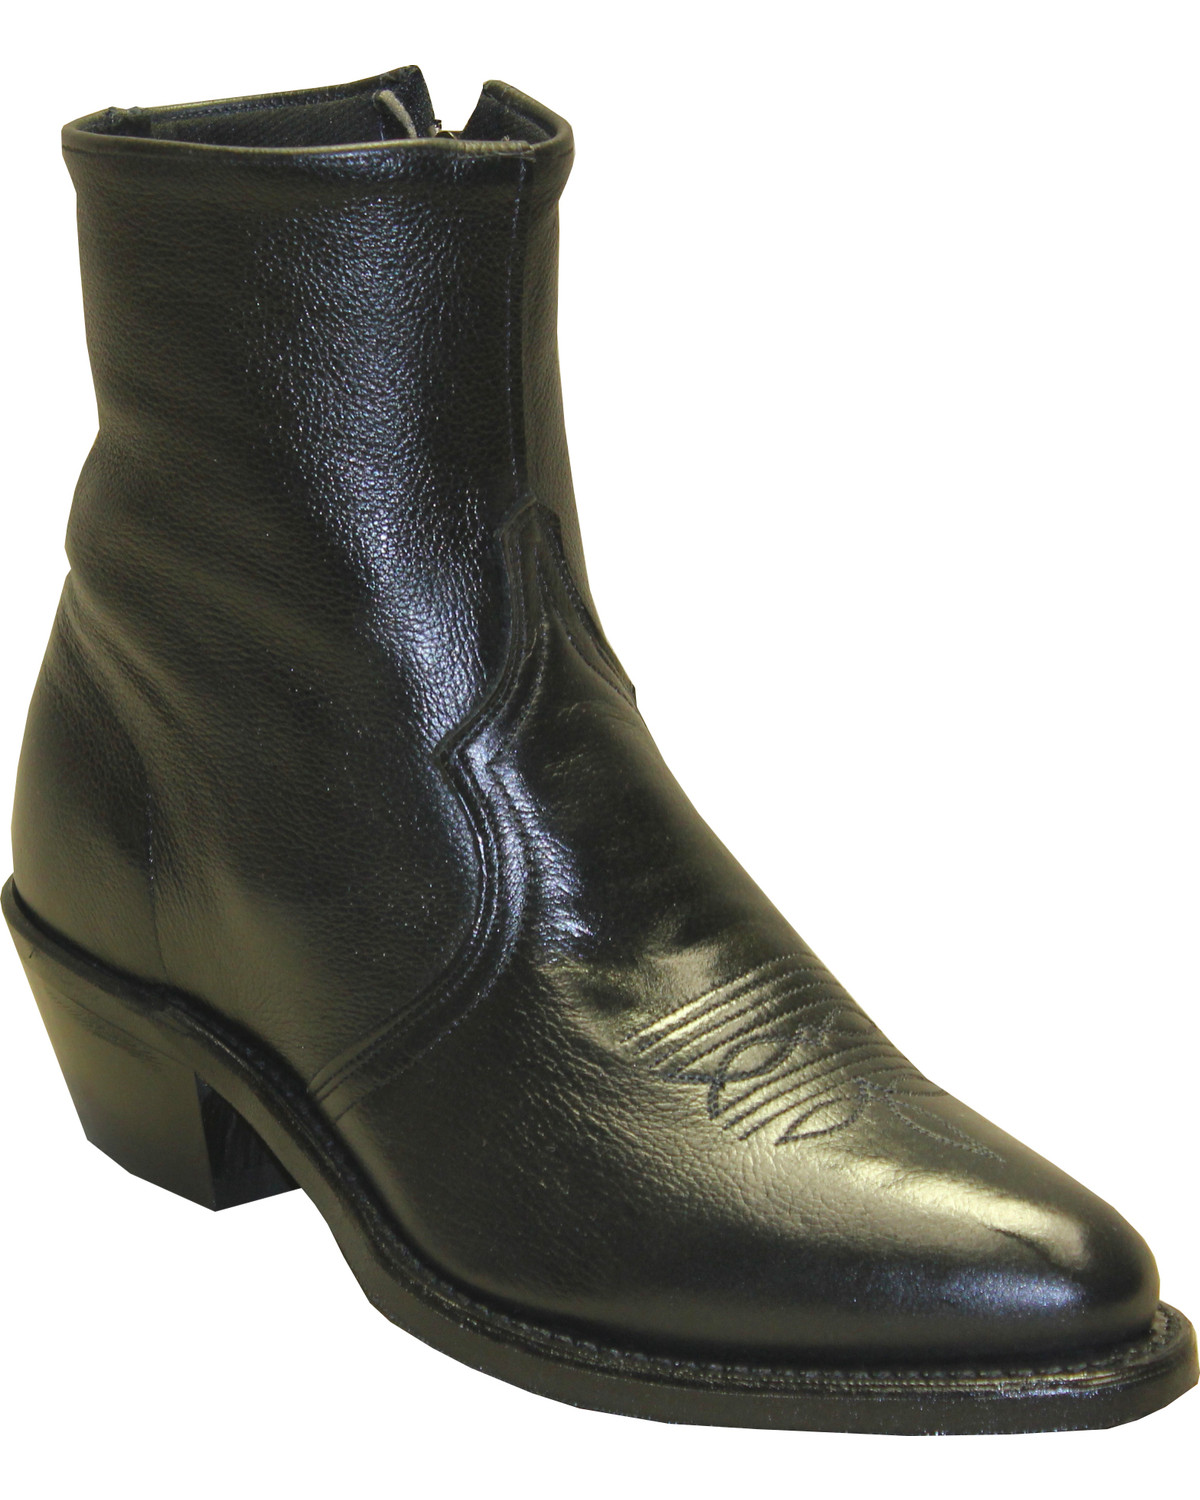 Sage Boots by Abilene Men's 7" Western Zip